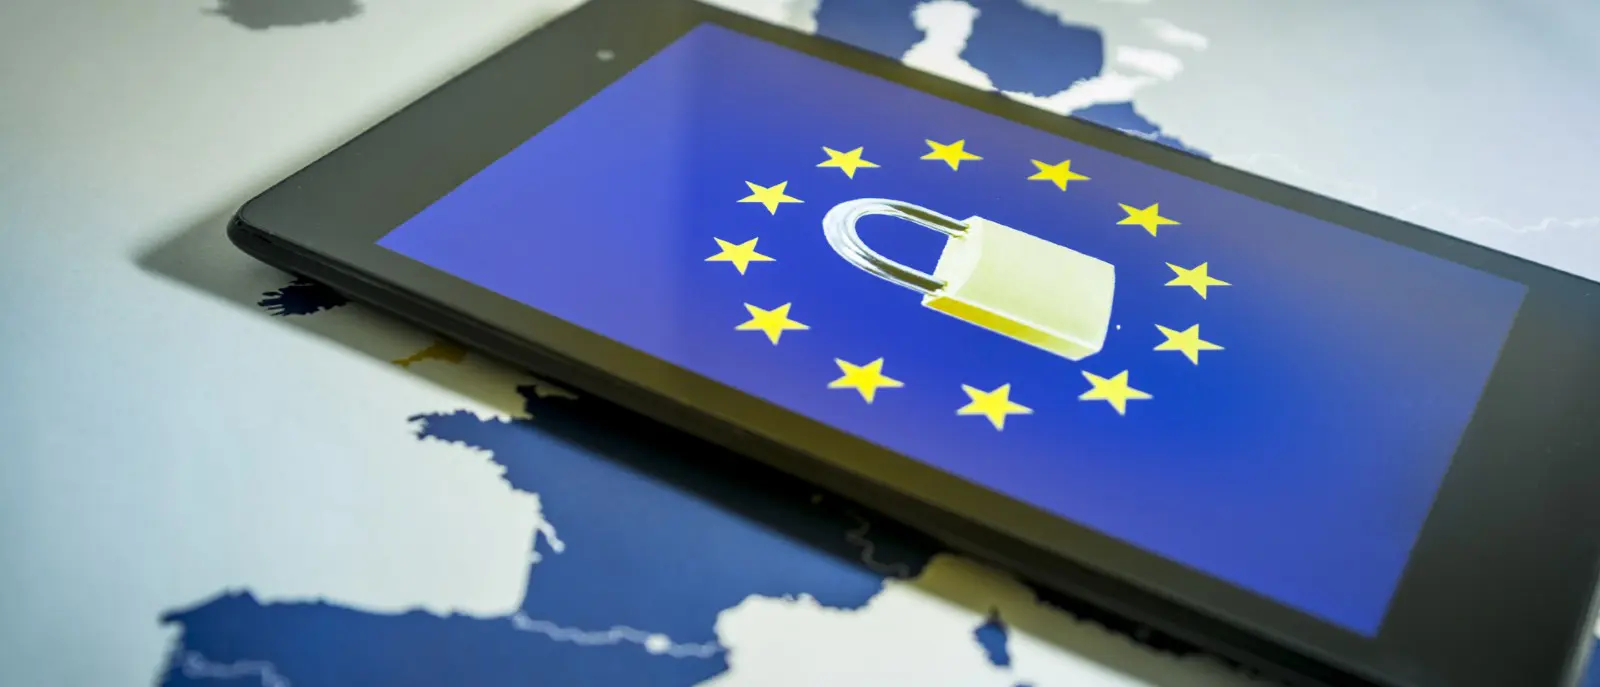 El reglamento de protección de datos europeo, un referente dos años después